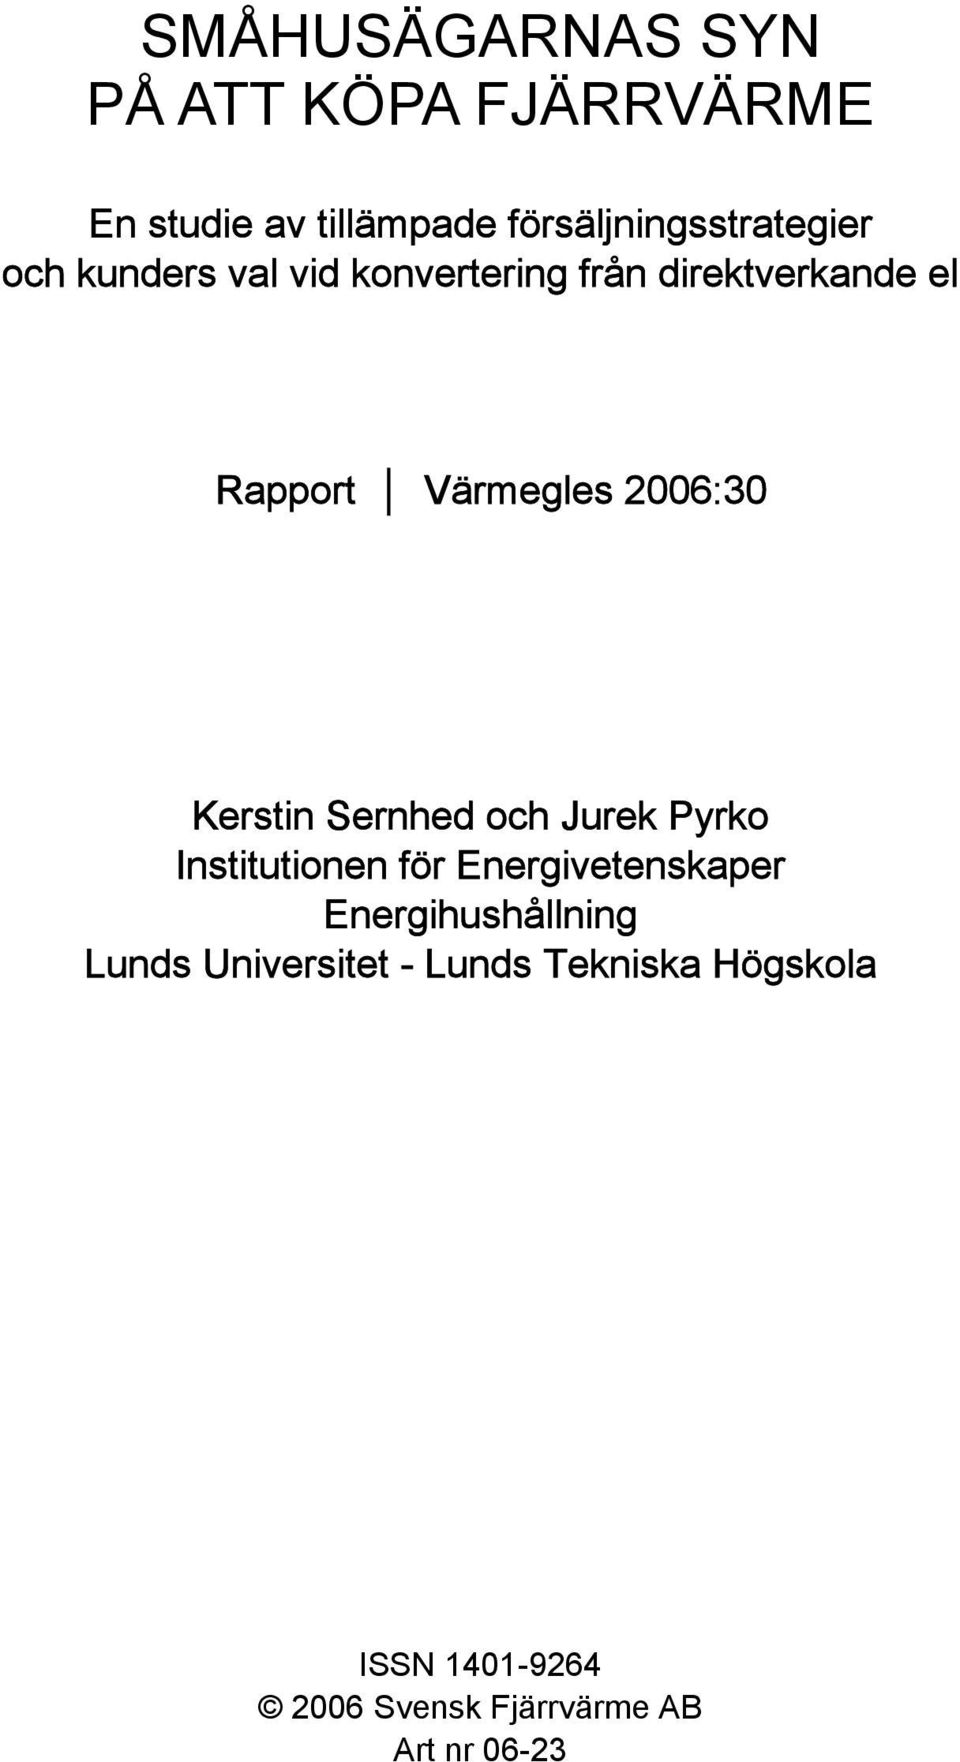 Kerstin Sernhed och Jurek Pyrko Institutionen för Energivetenskaper Energihushållning